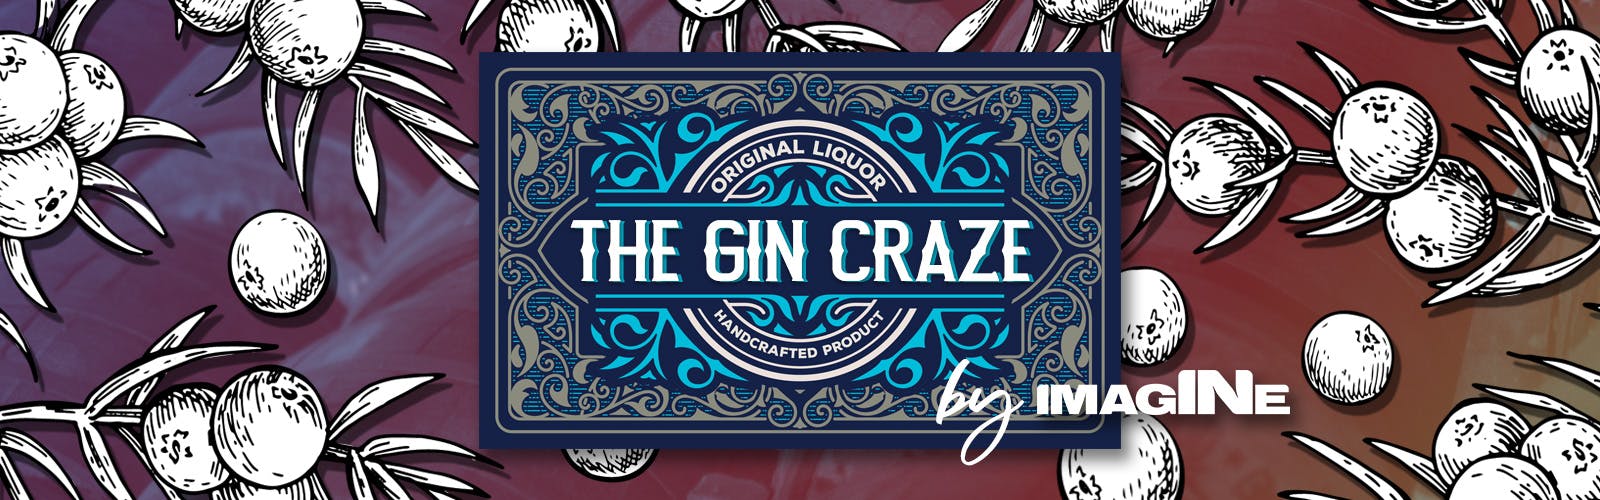 L'esperienza Gin Craze a Londra con Gin Palace e tour della distilleria